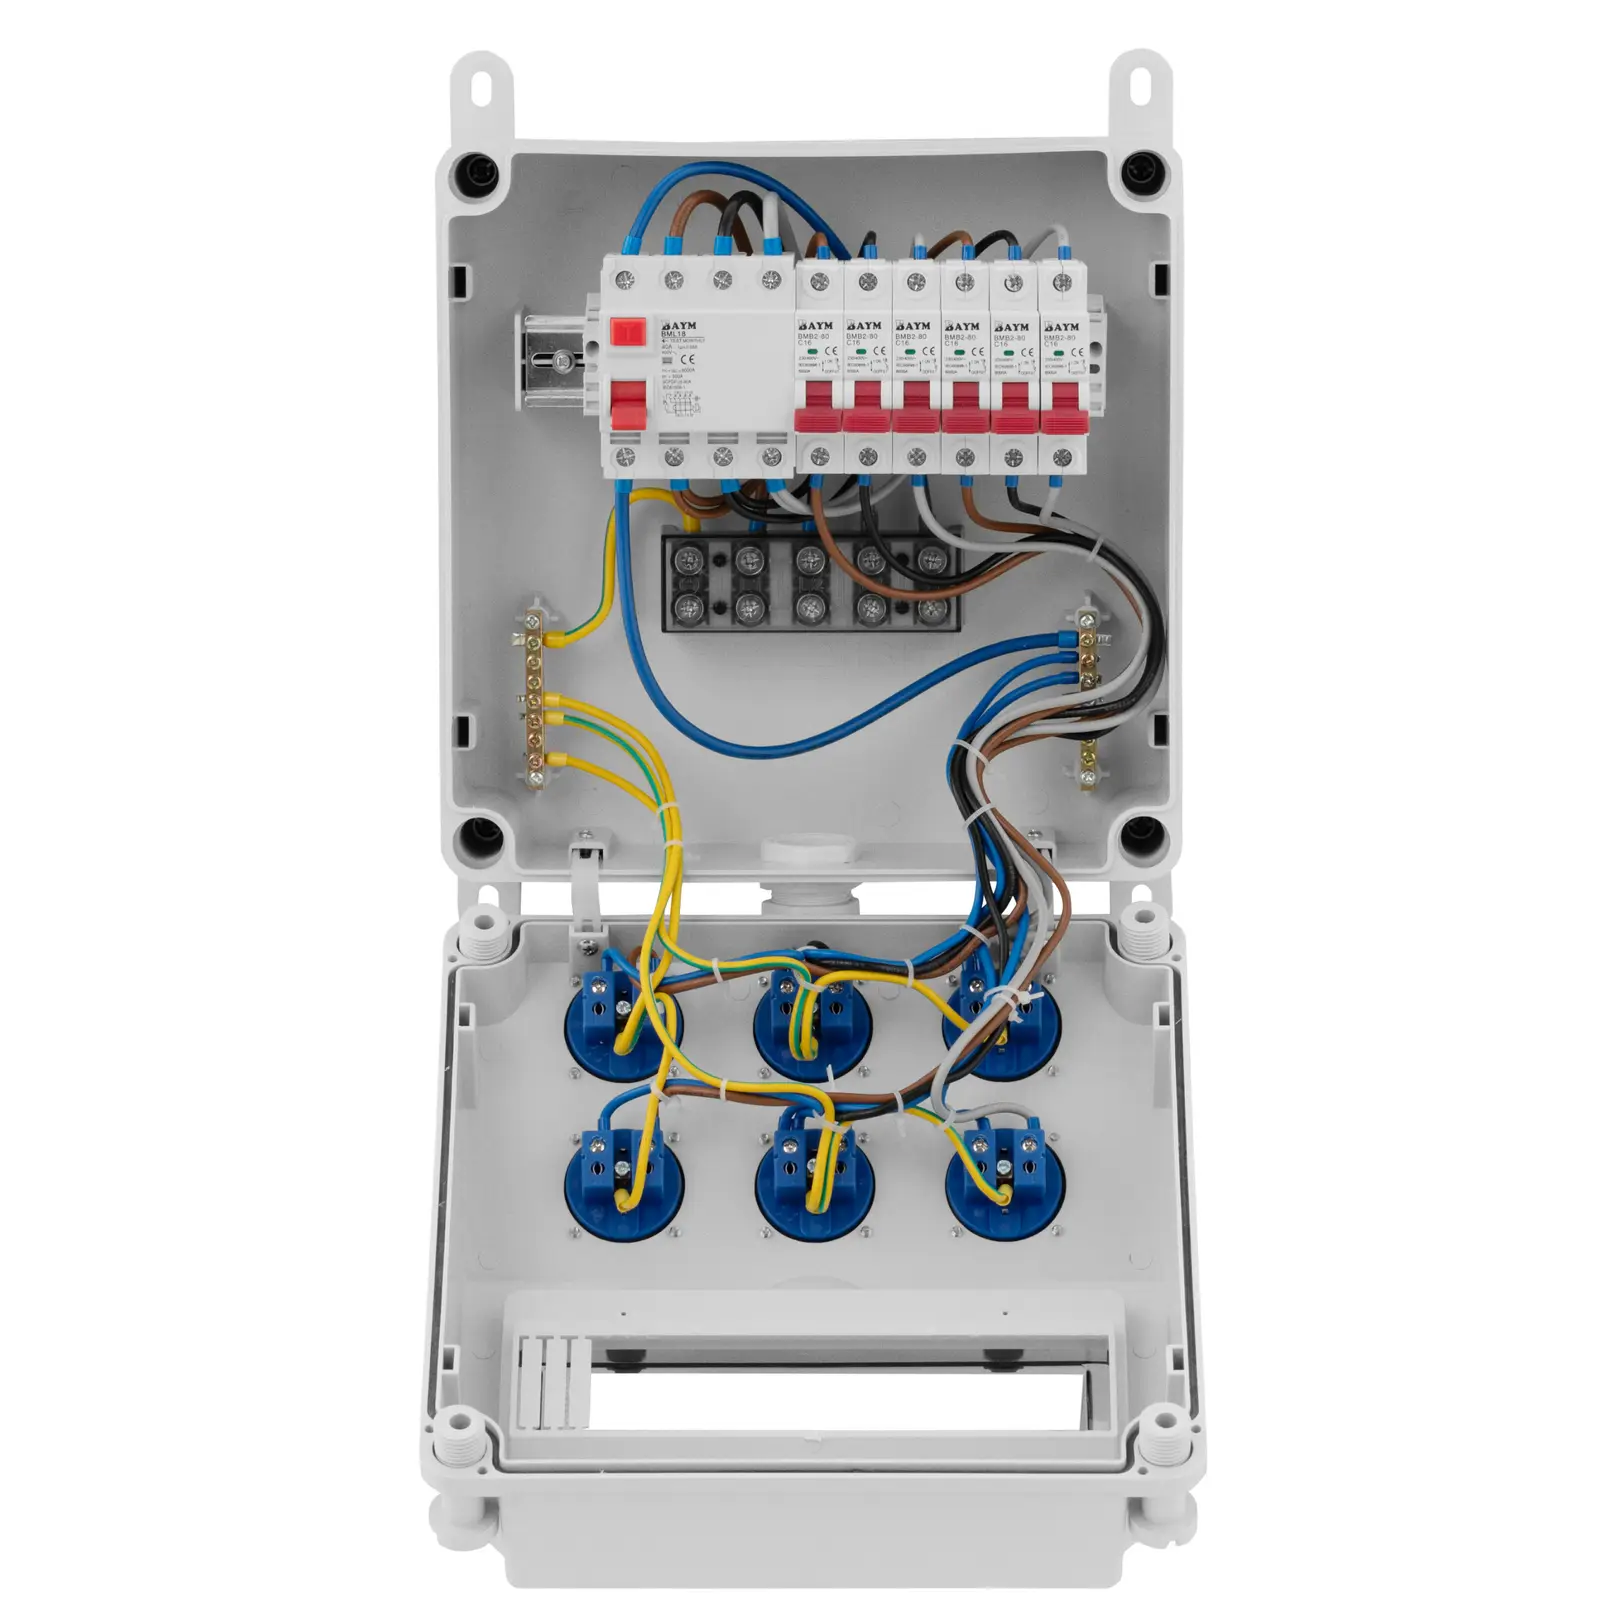 Distribuitor de energie - 6 prize cu împământare - siguranțe RCD - 6 întrerupătoare de circuit